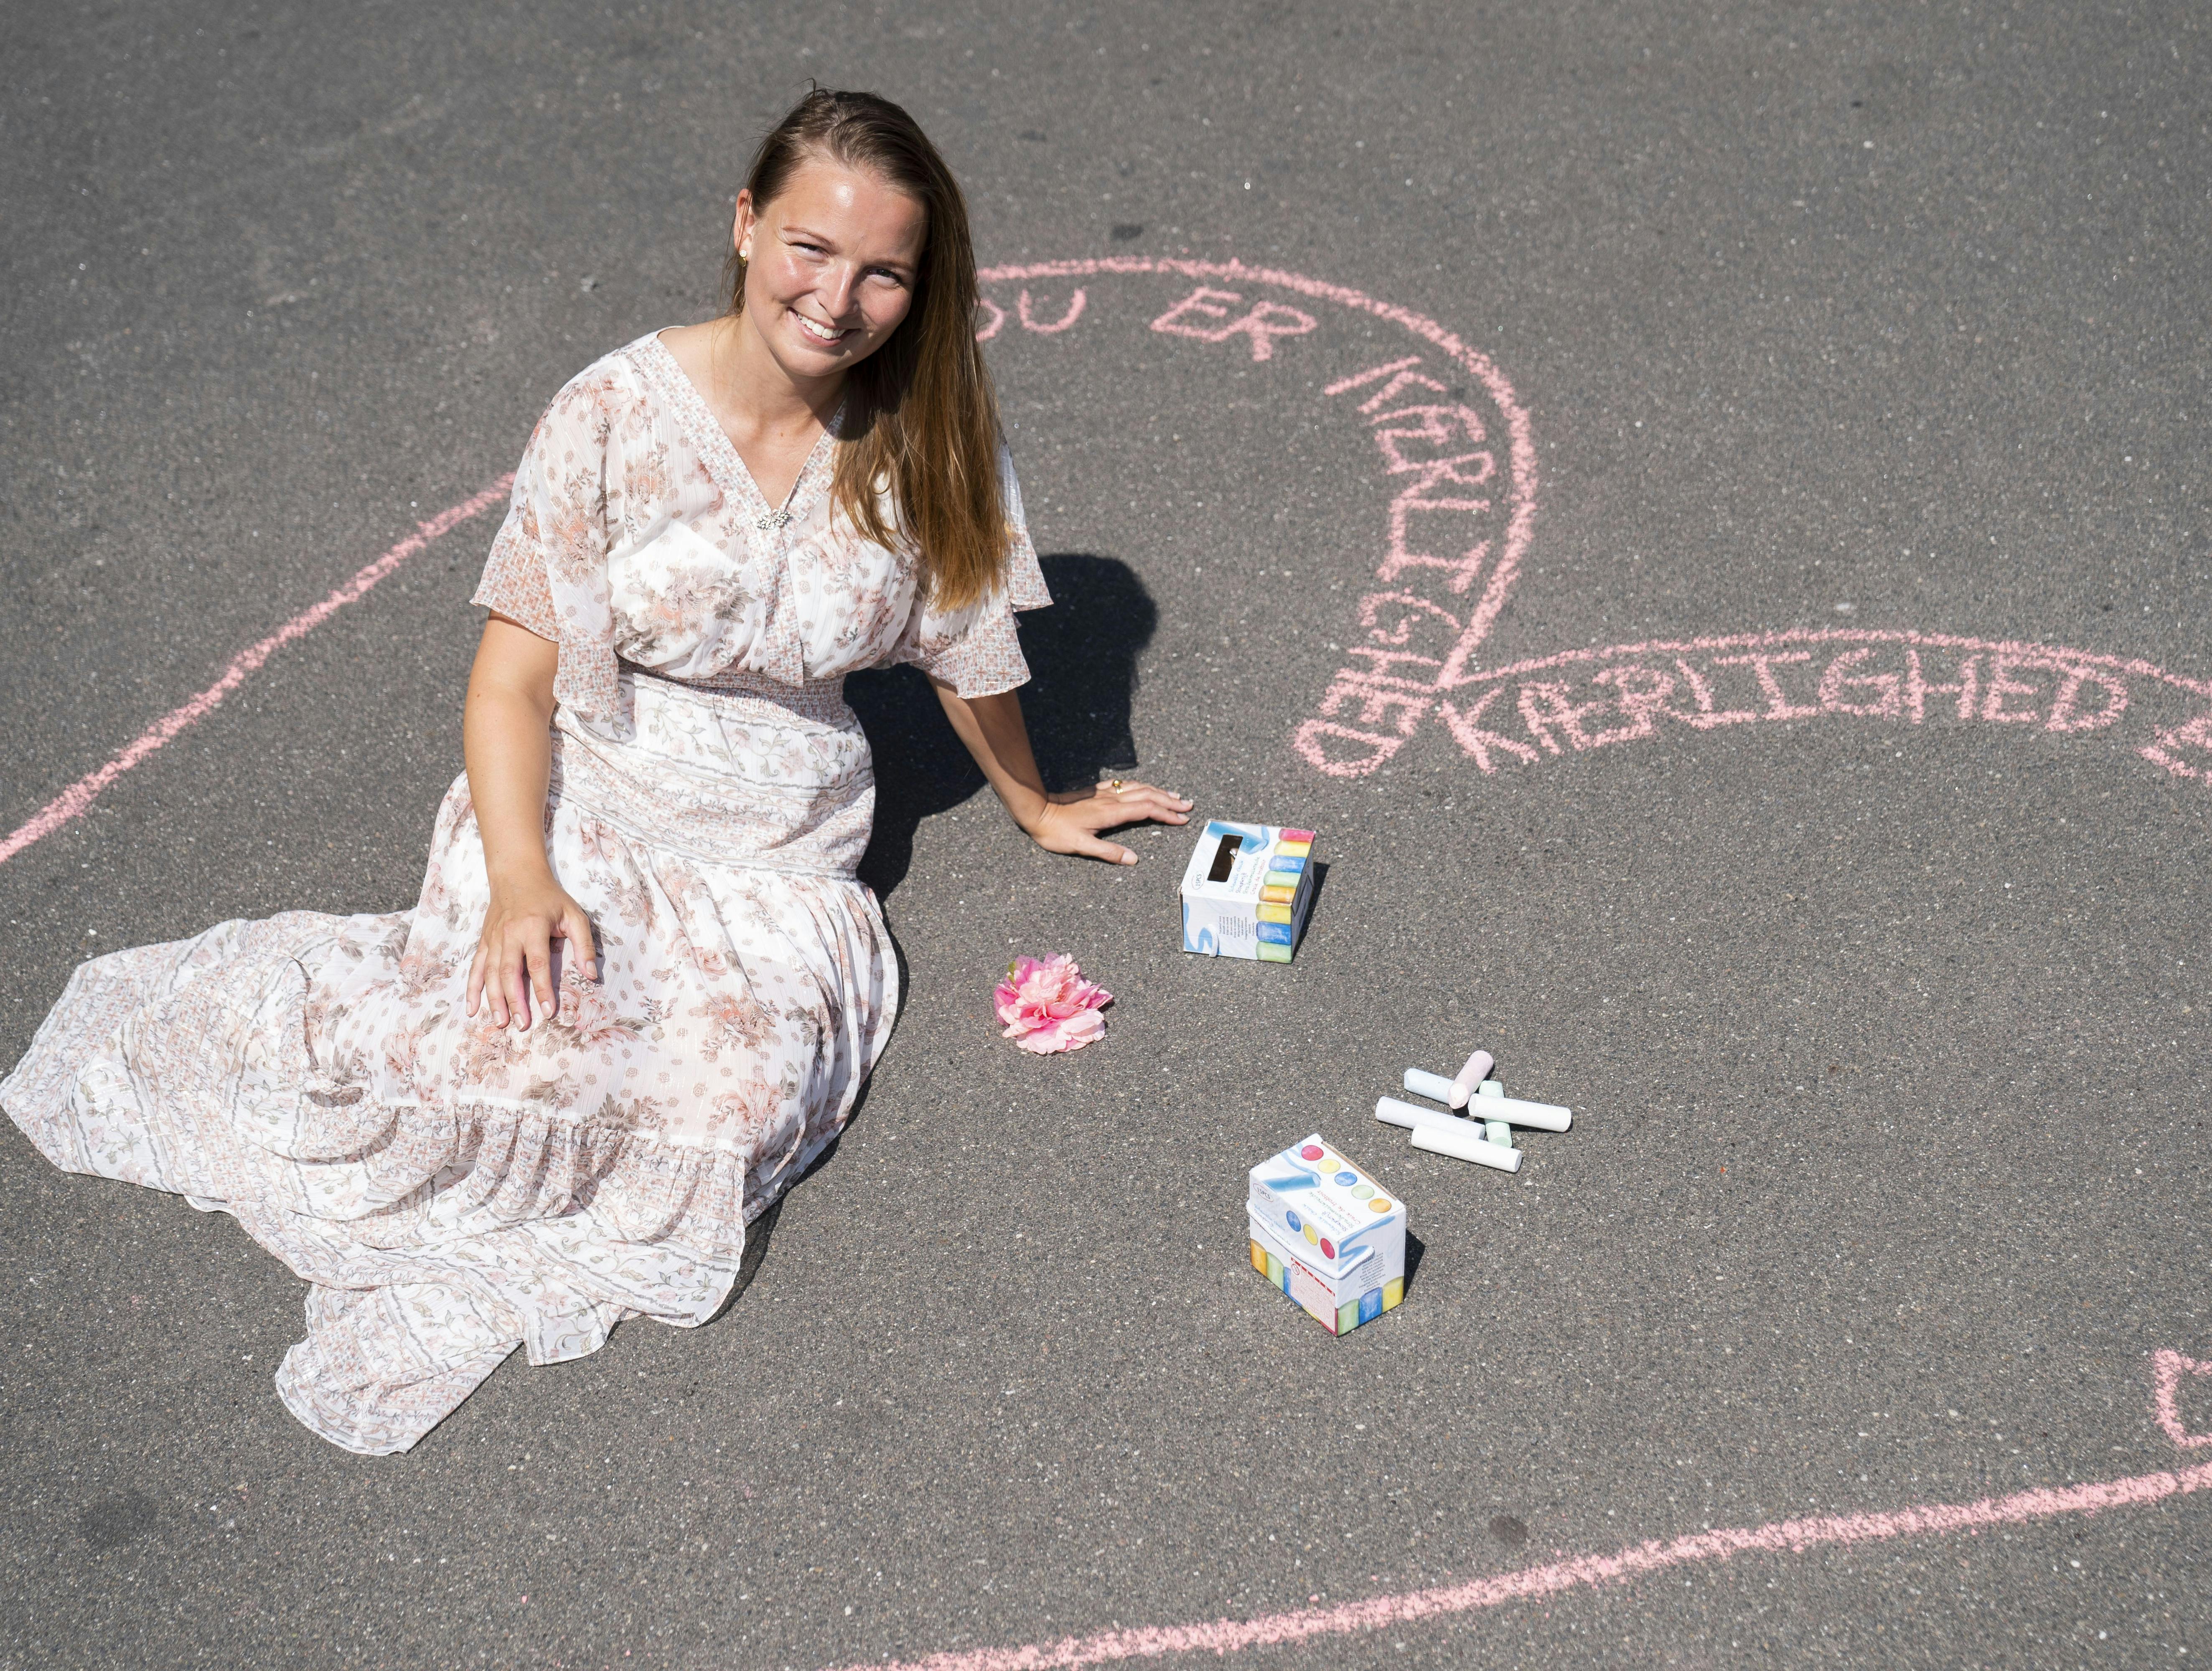 Ambassadør for kærlighed og lykke: Kamilla spreder glæde på gadeplan